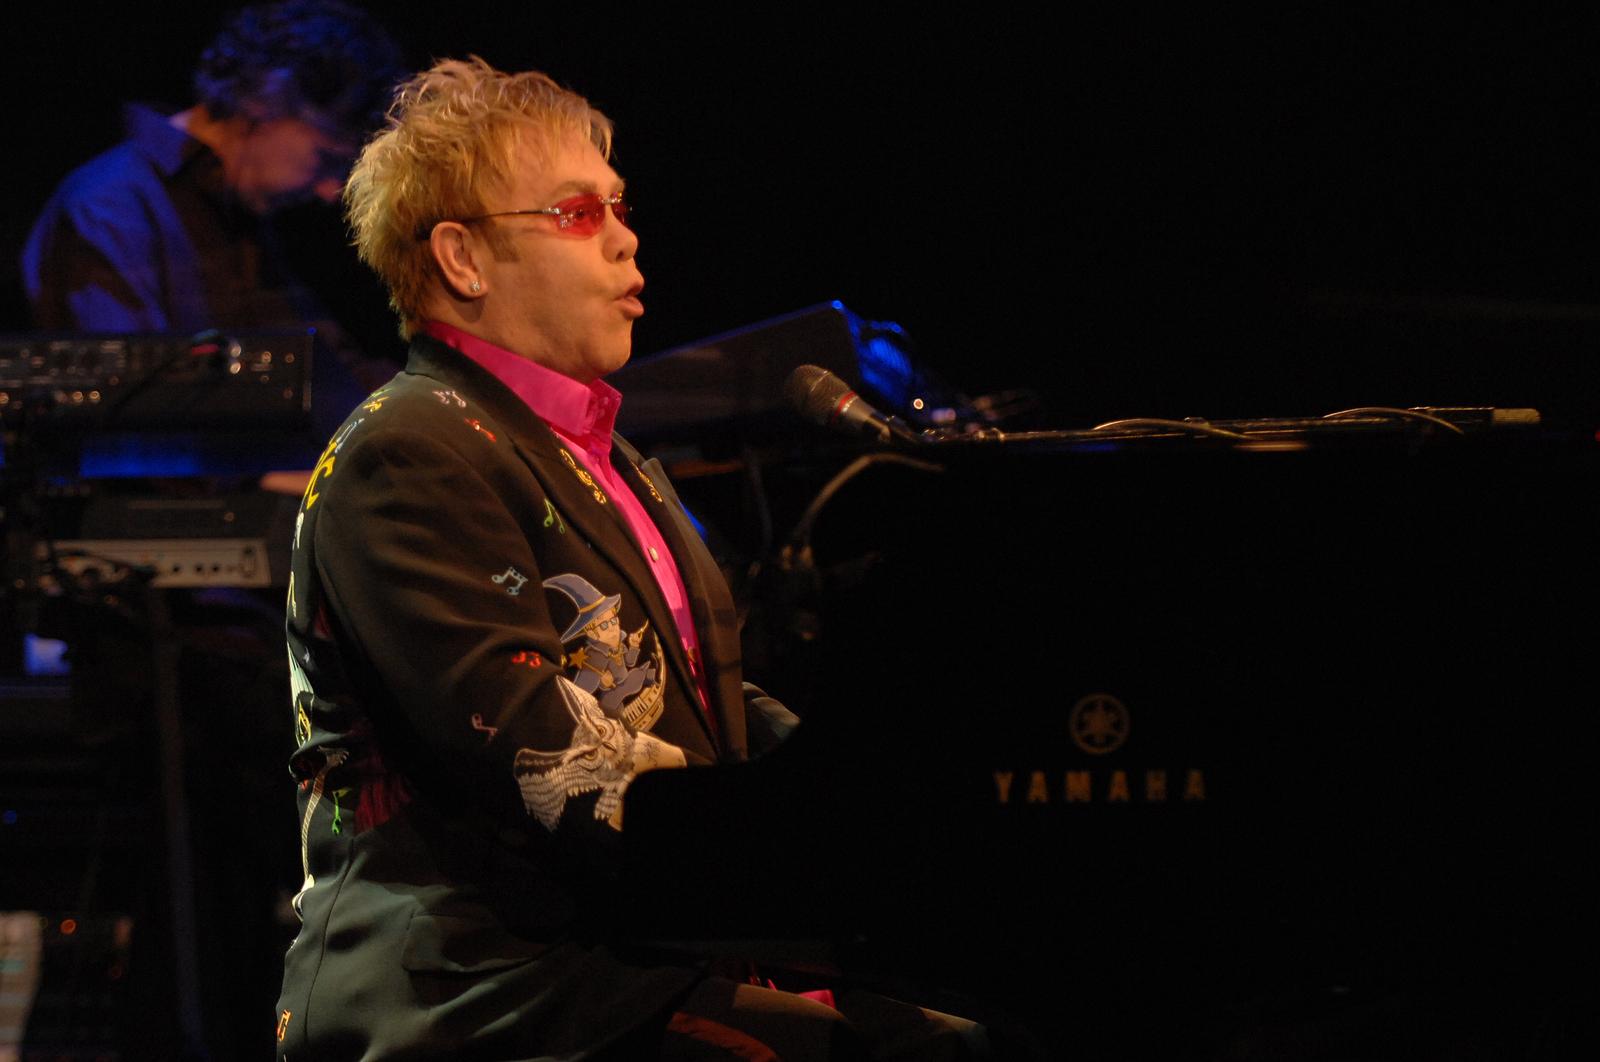 08.07.2009., Pula - Sir Elton John je nastupio u sklopu svoje turneje, otvorivsi time Histria festival, u Areni. Pet, sest tisuca ljudi pred ulazom u anticko zdanje je napravilo red kako bi svi usli i ovacijama pozdravili slavnog glazbenika. Photo: Dusko Marusic/Vecernji list